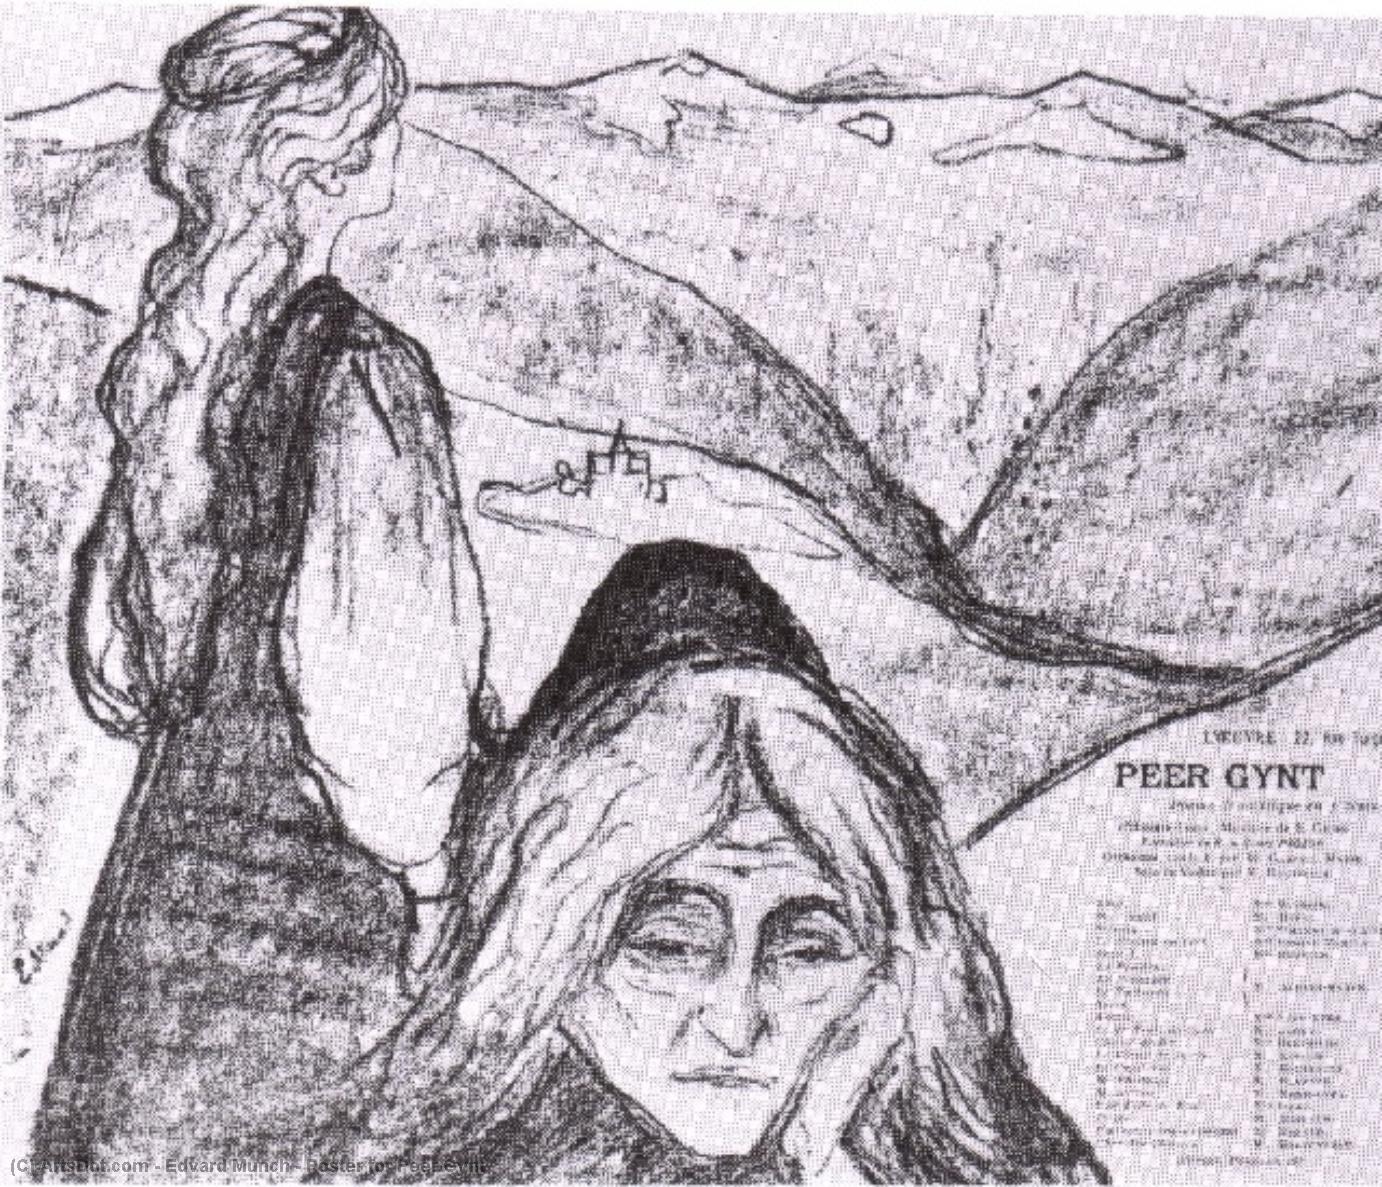 WikiOO.org - Encyclopedia of Fine Arts - Maleri, Artwork Edvard Munch - Poster for Peer Gynt